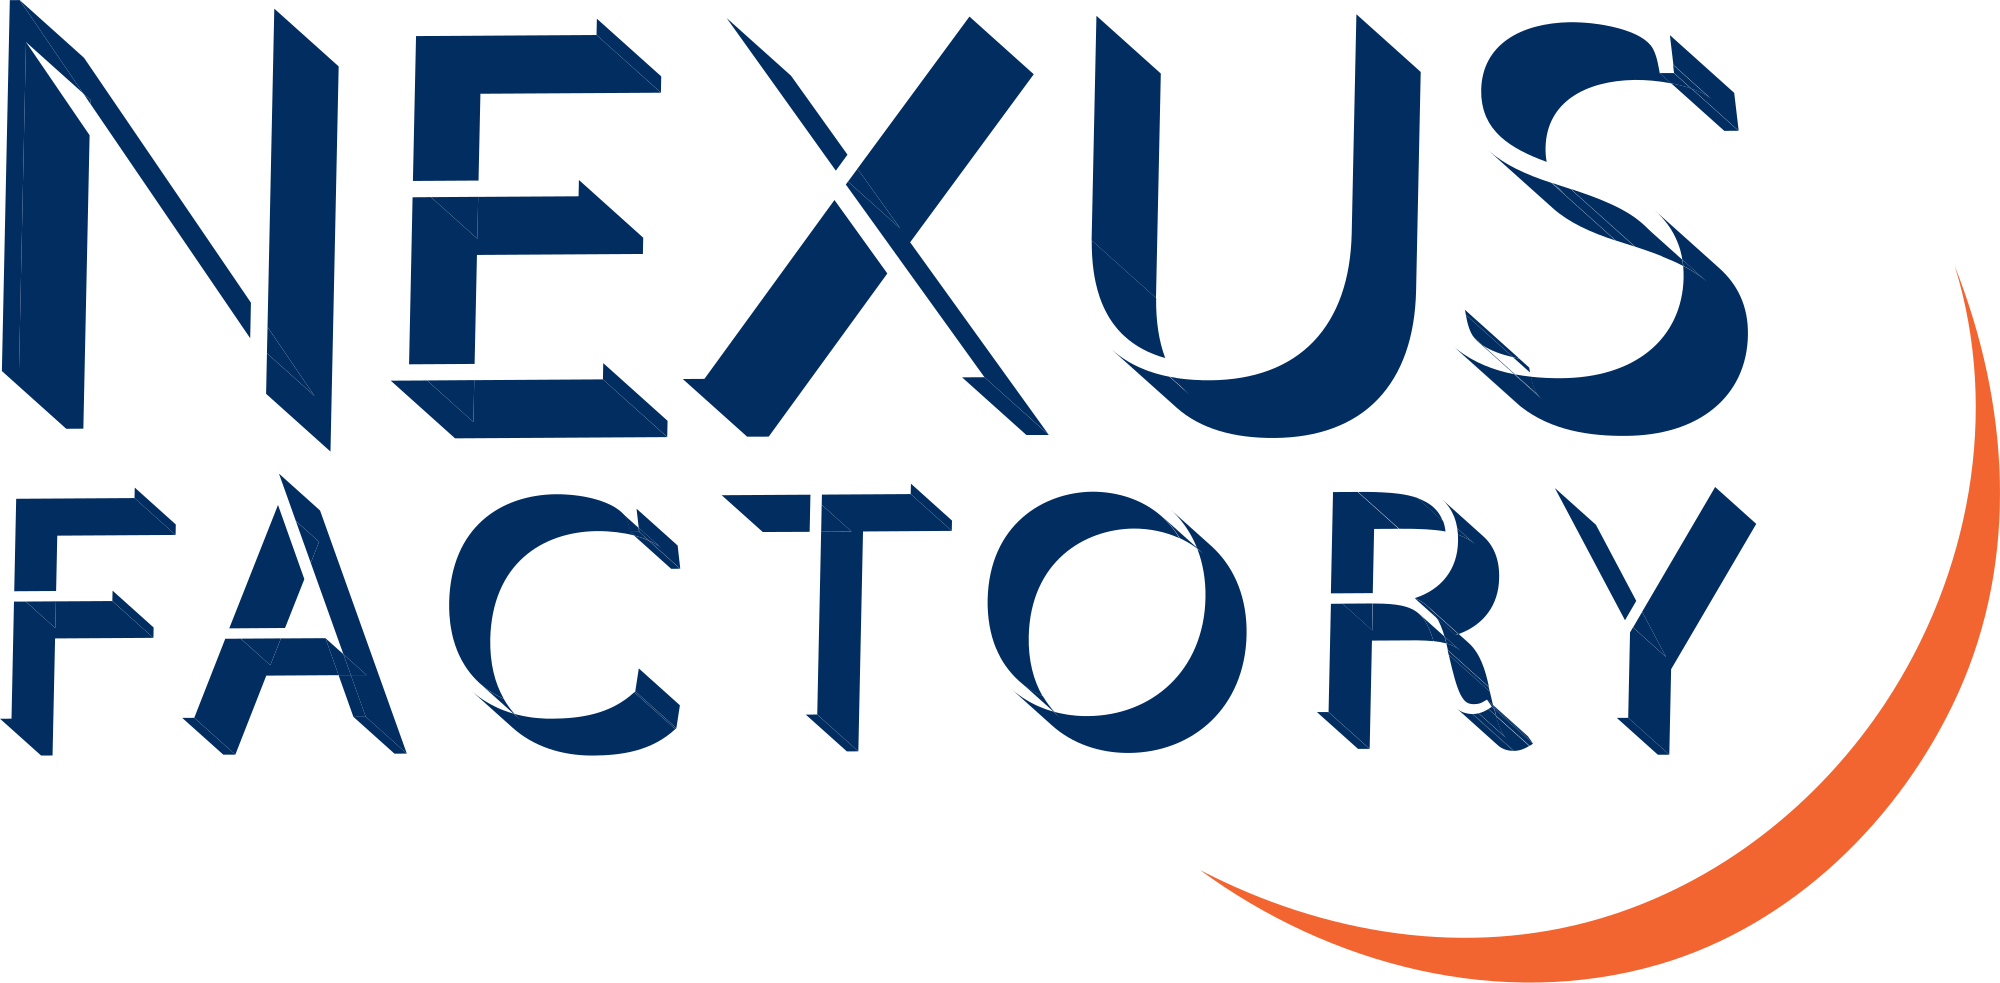 Nexus Factory